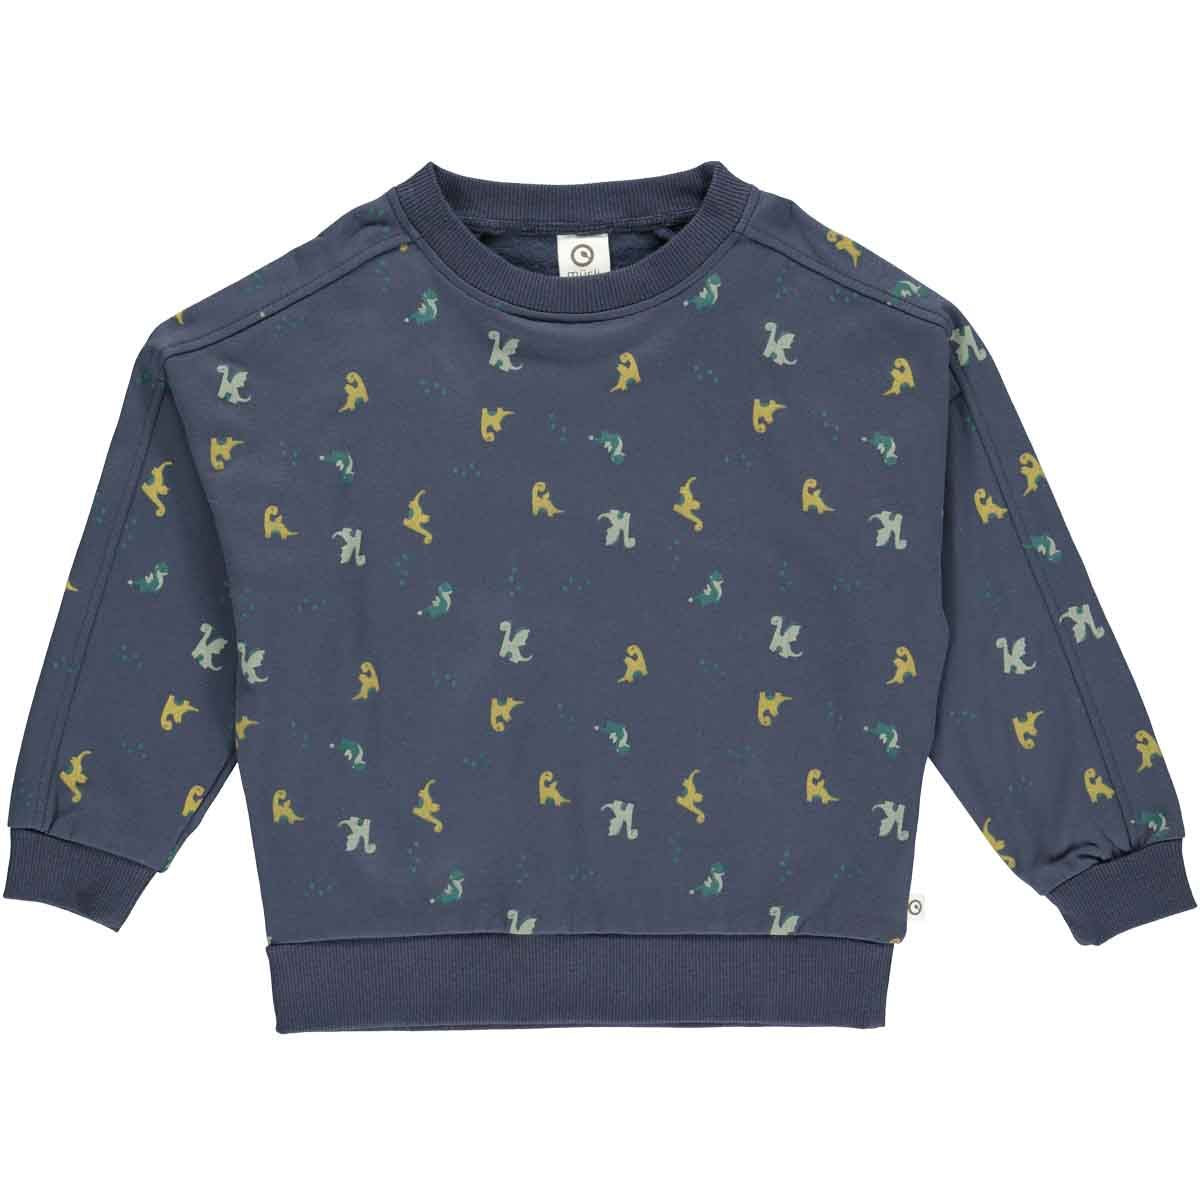 donkerblauwe baby sweater met draakjes print, foto van de voorkant